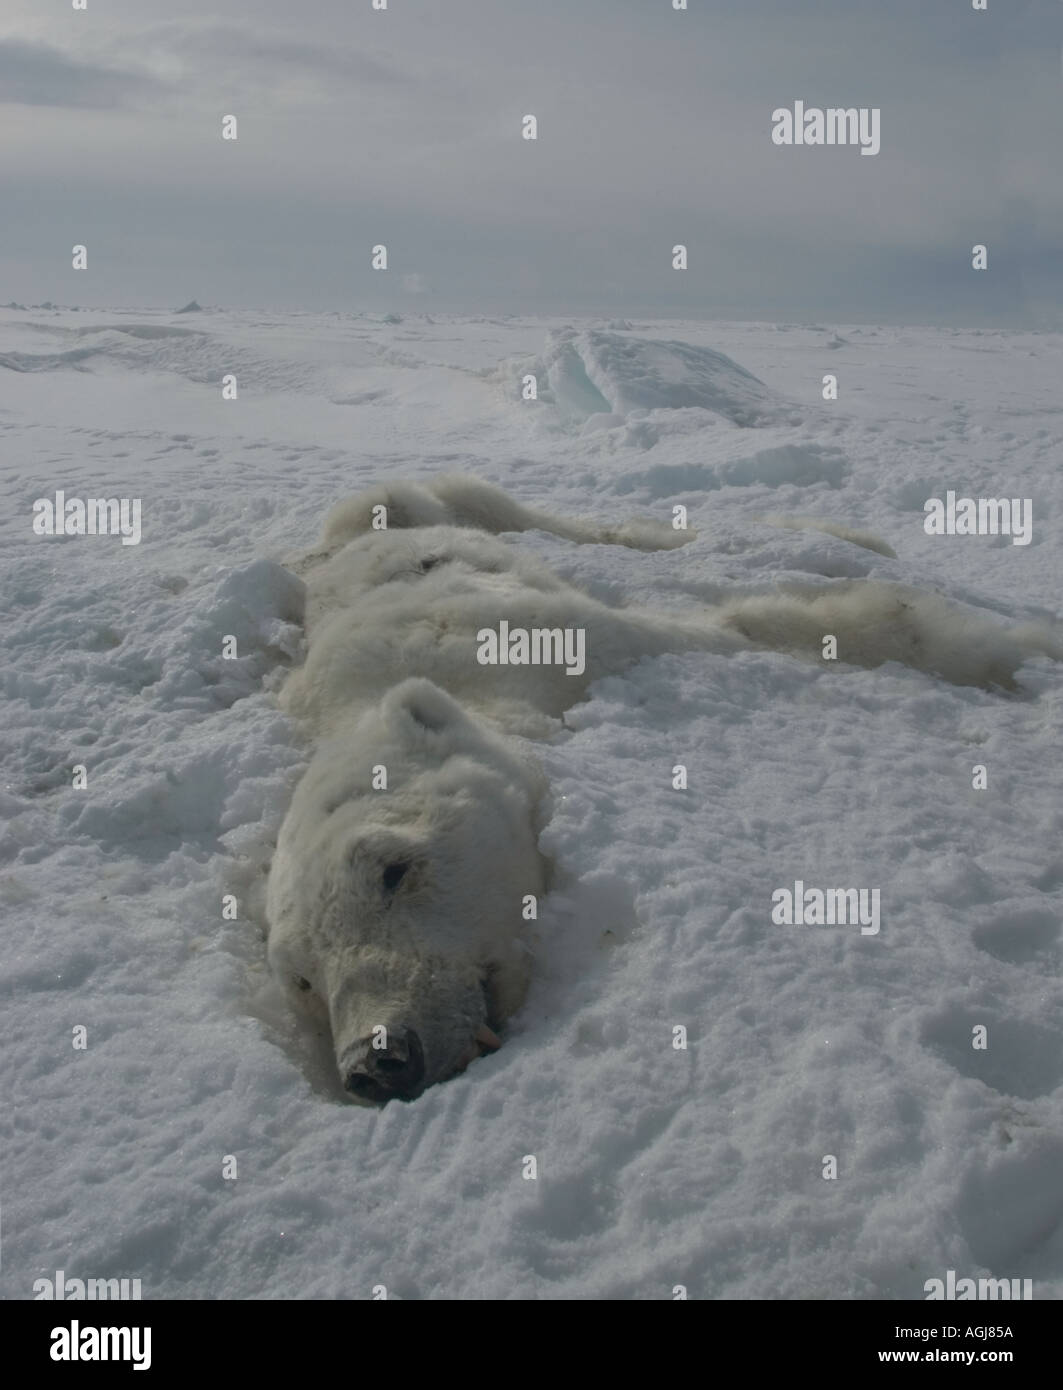 Morto orso polare è morta di fame durante l inverno e potrebbe diventare una visione comune come il cambiamento climatico diminuisce quel mare ica Foto Stock